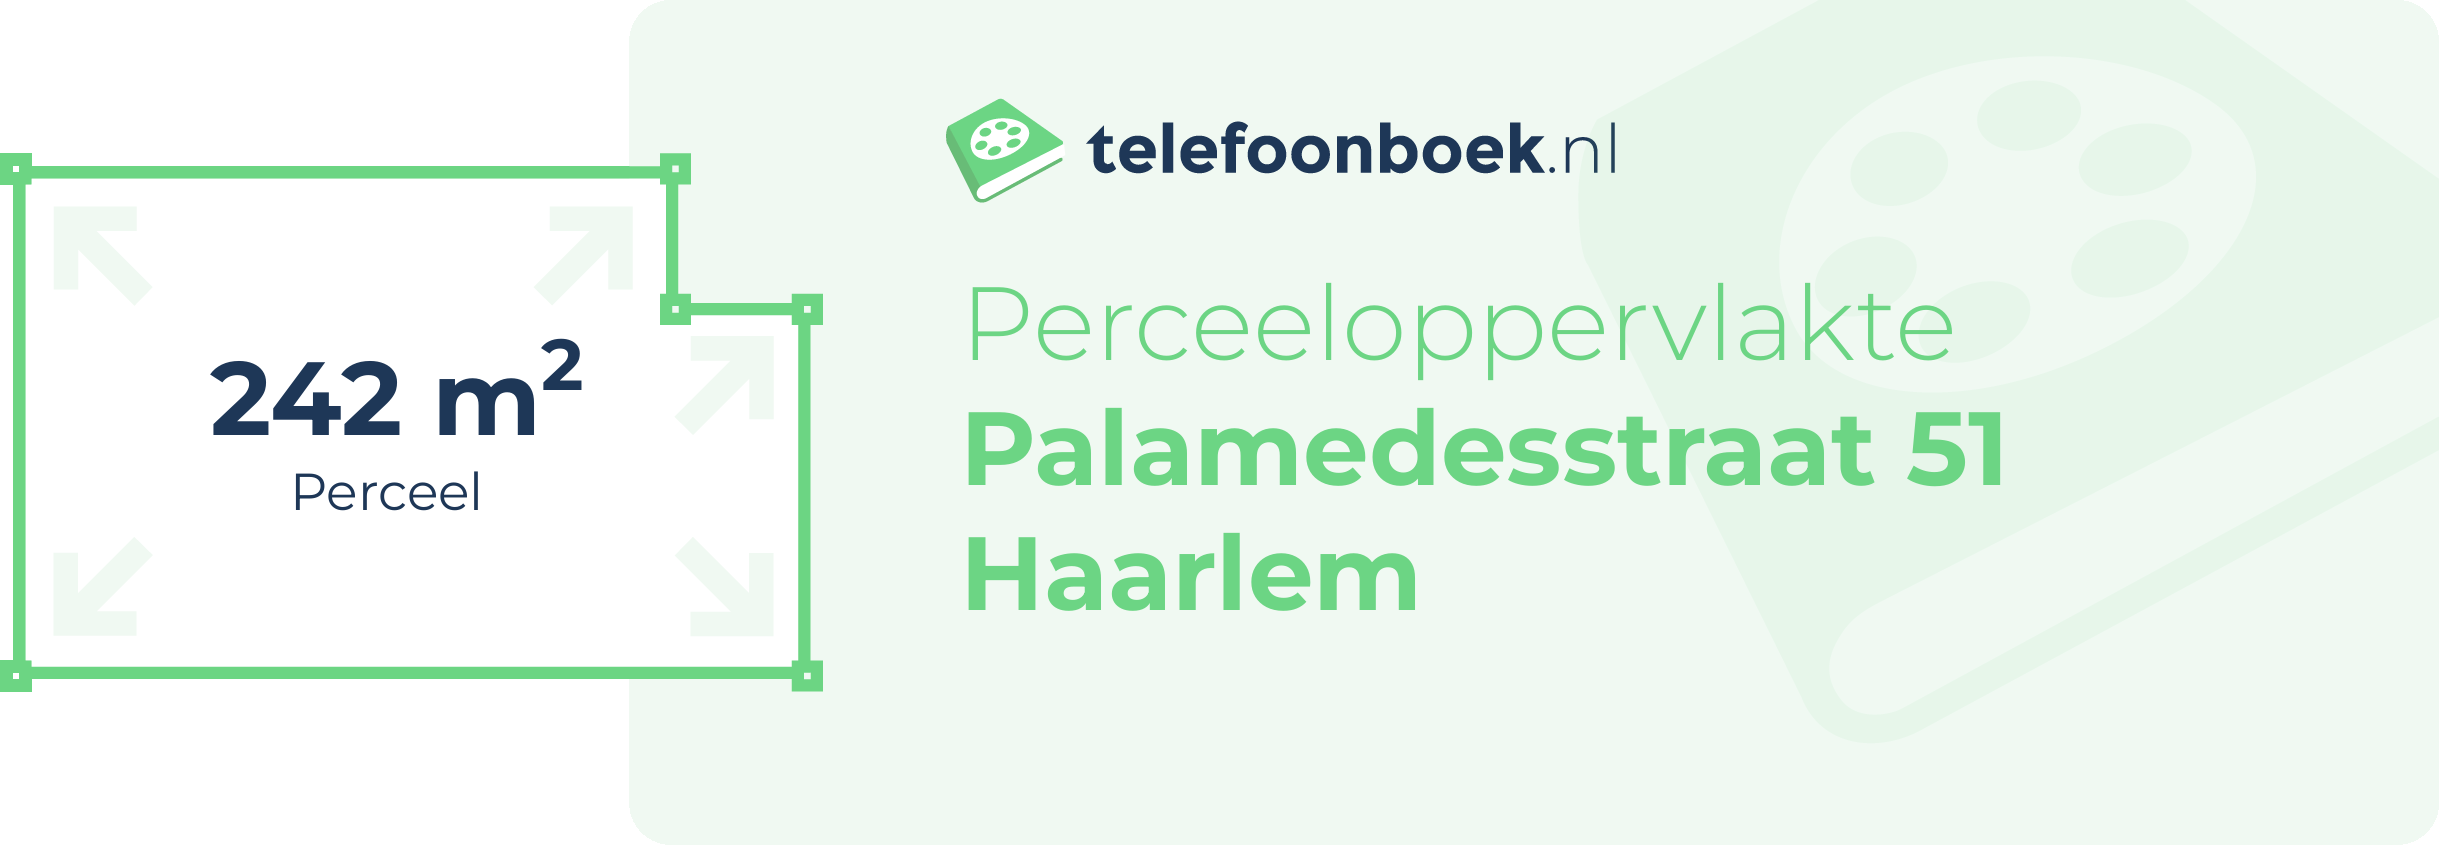 Perceeloppervlakte Palamedesstraat 51 Haarlem